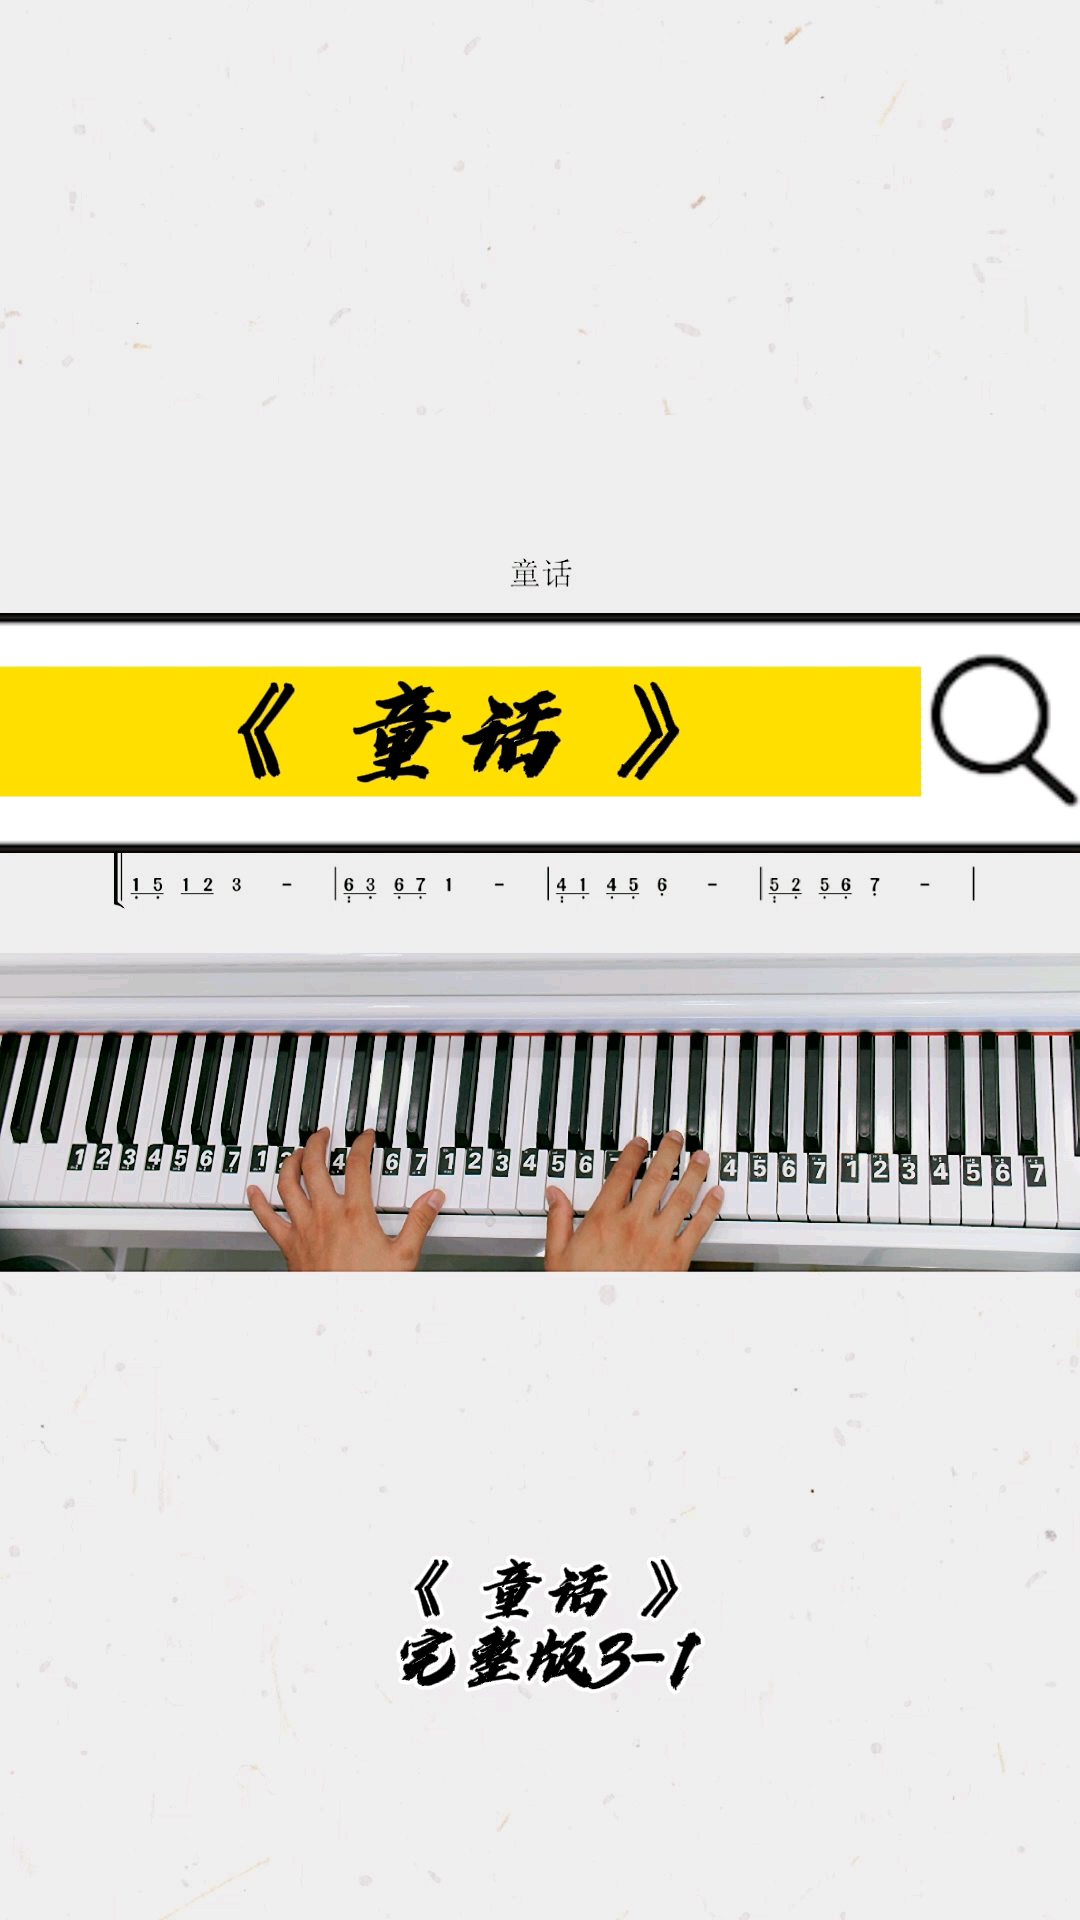 幼儿钢琴教学视频(幼儿园钢琴入门课程视频)